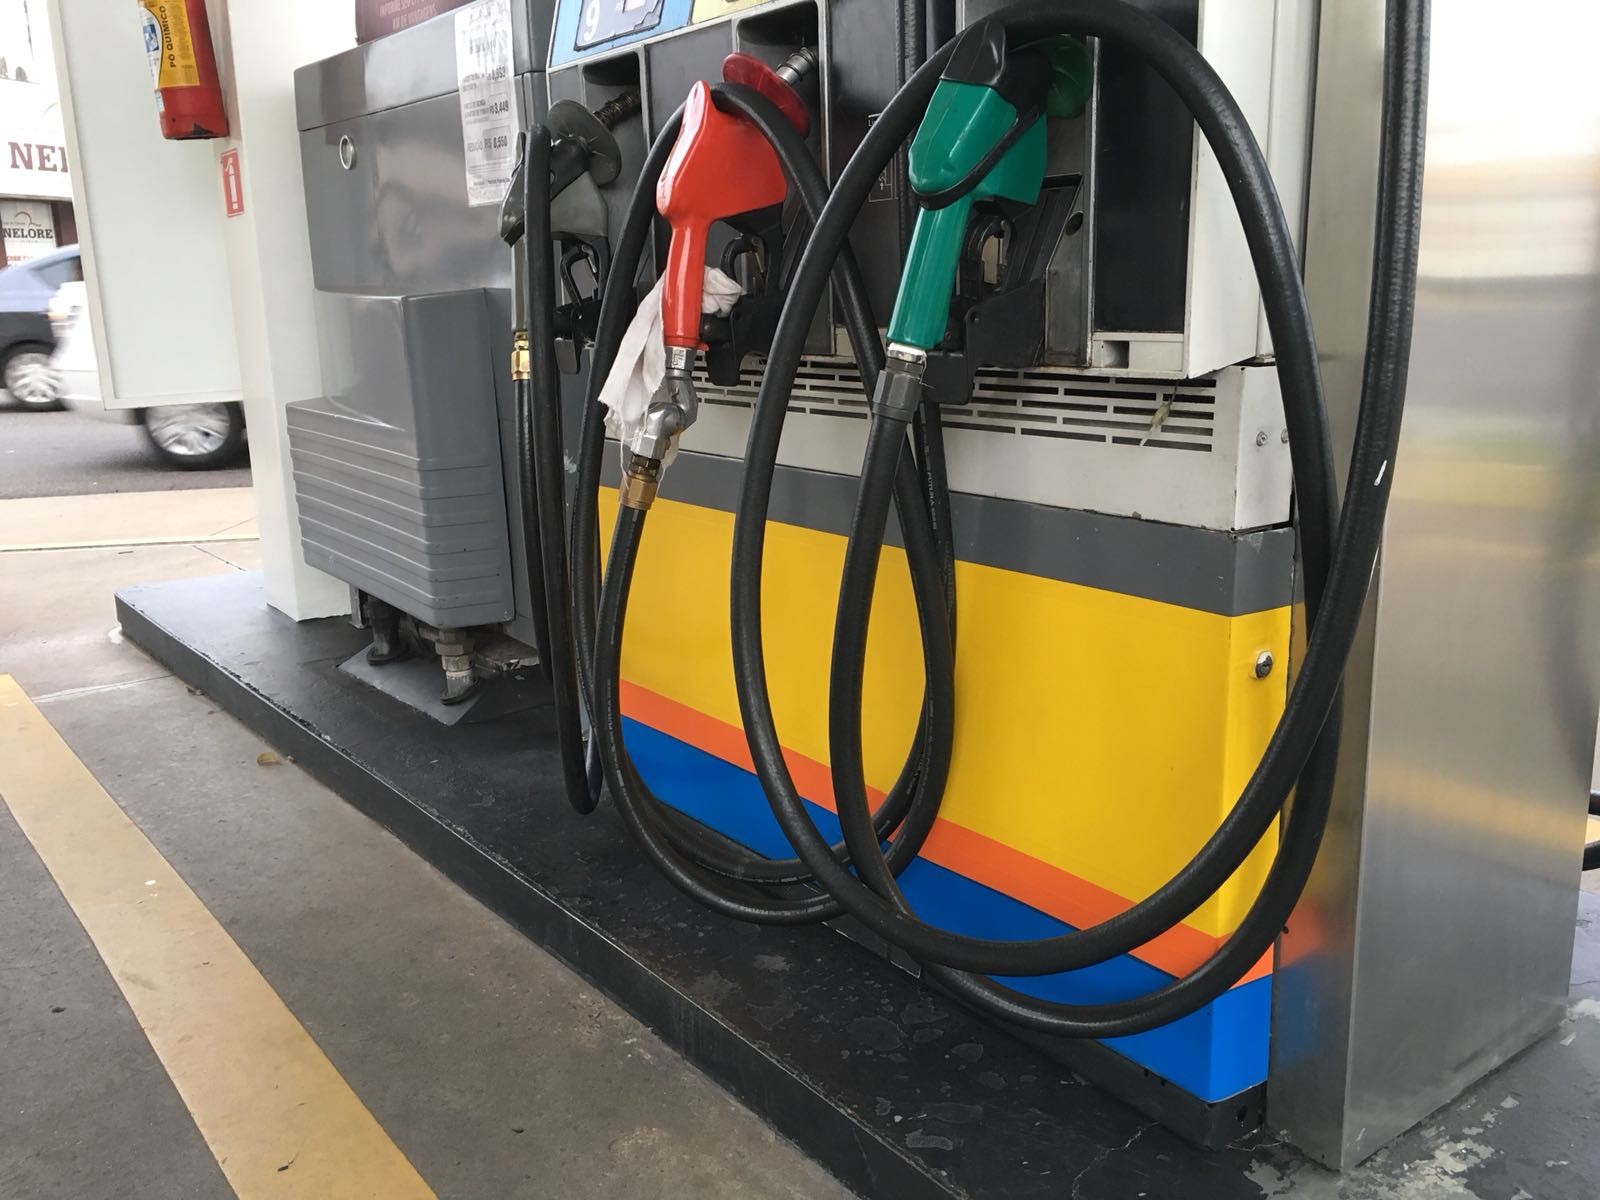 Preço médio da gasolina sobe no CE após 5 semanas de queda, diz ANP